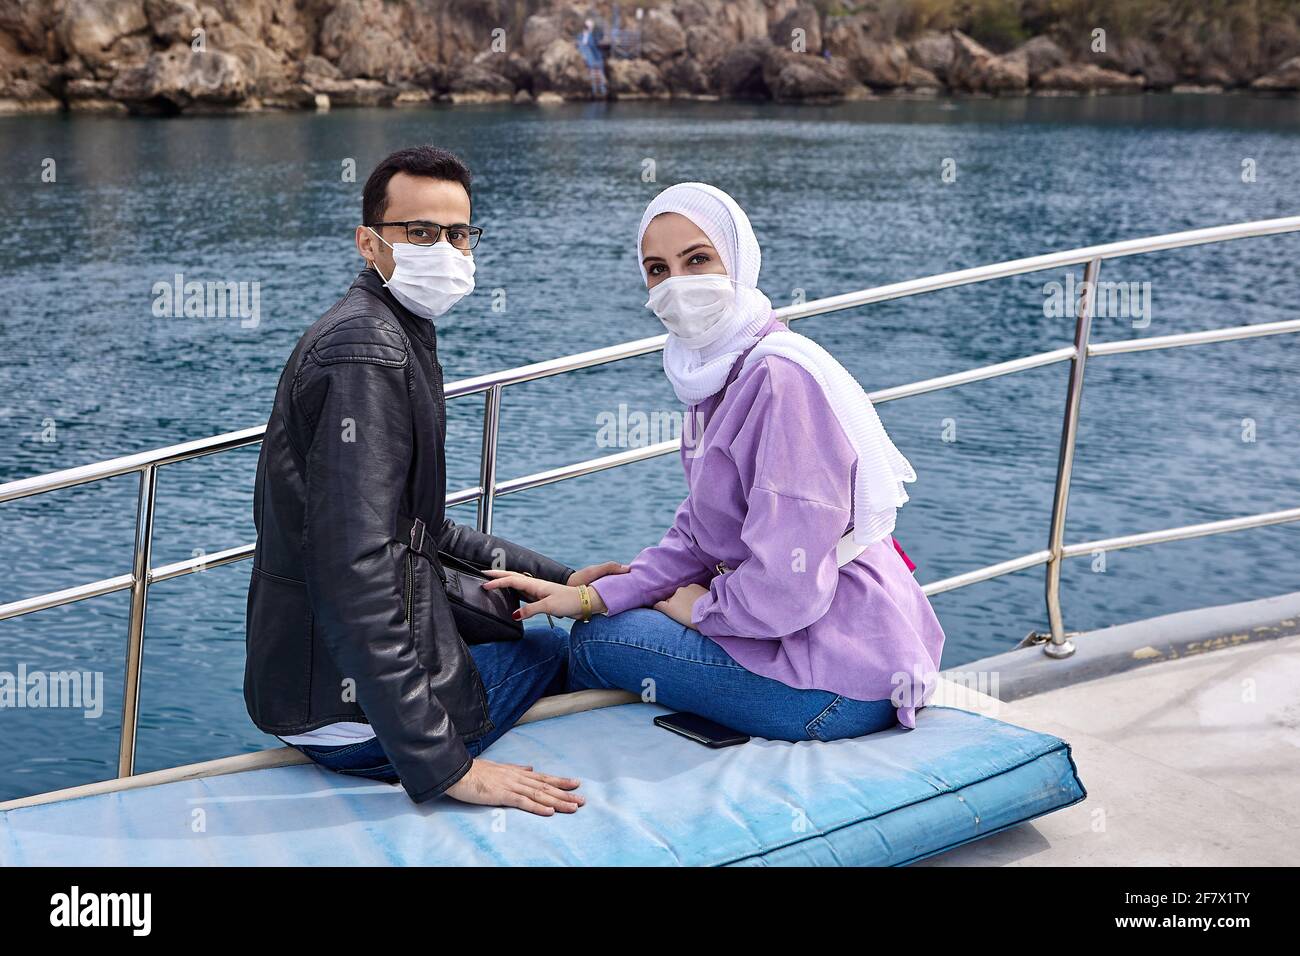 Les personnes sans masque facial ne seront pas autorisées dans les lieux  publics d'Antalya, Turquie Photo Stock - Alamy